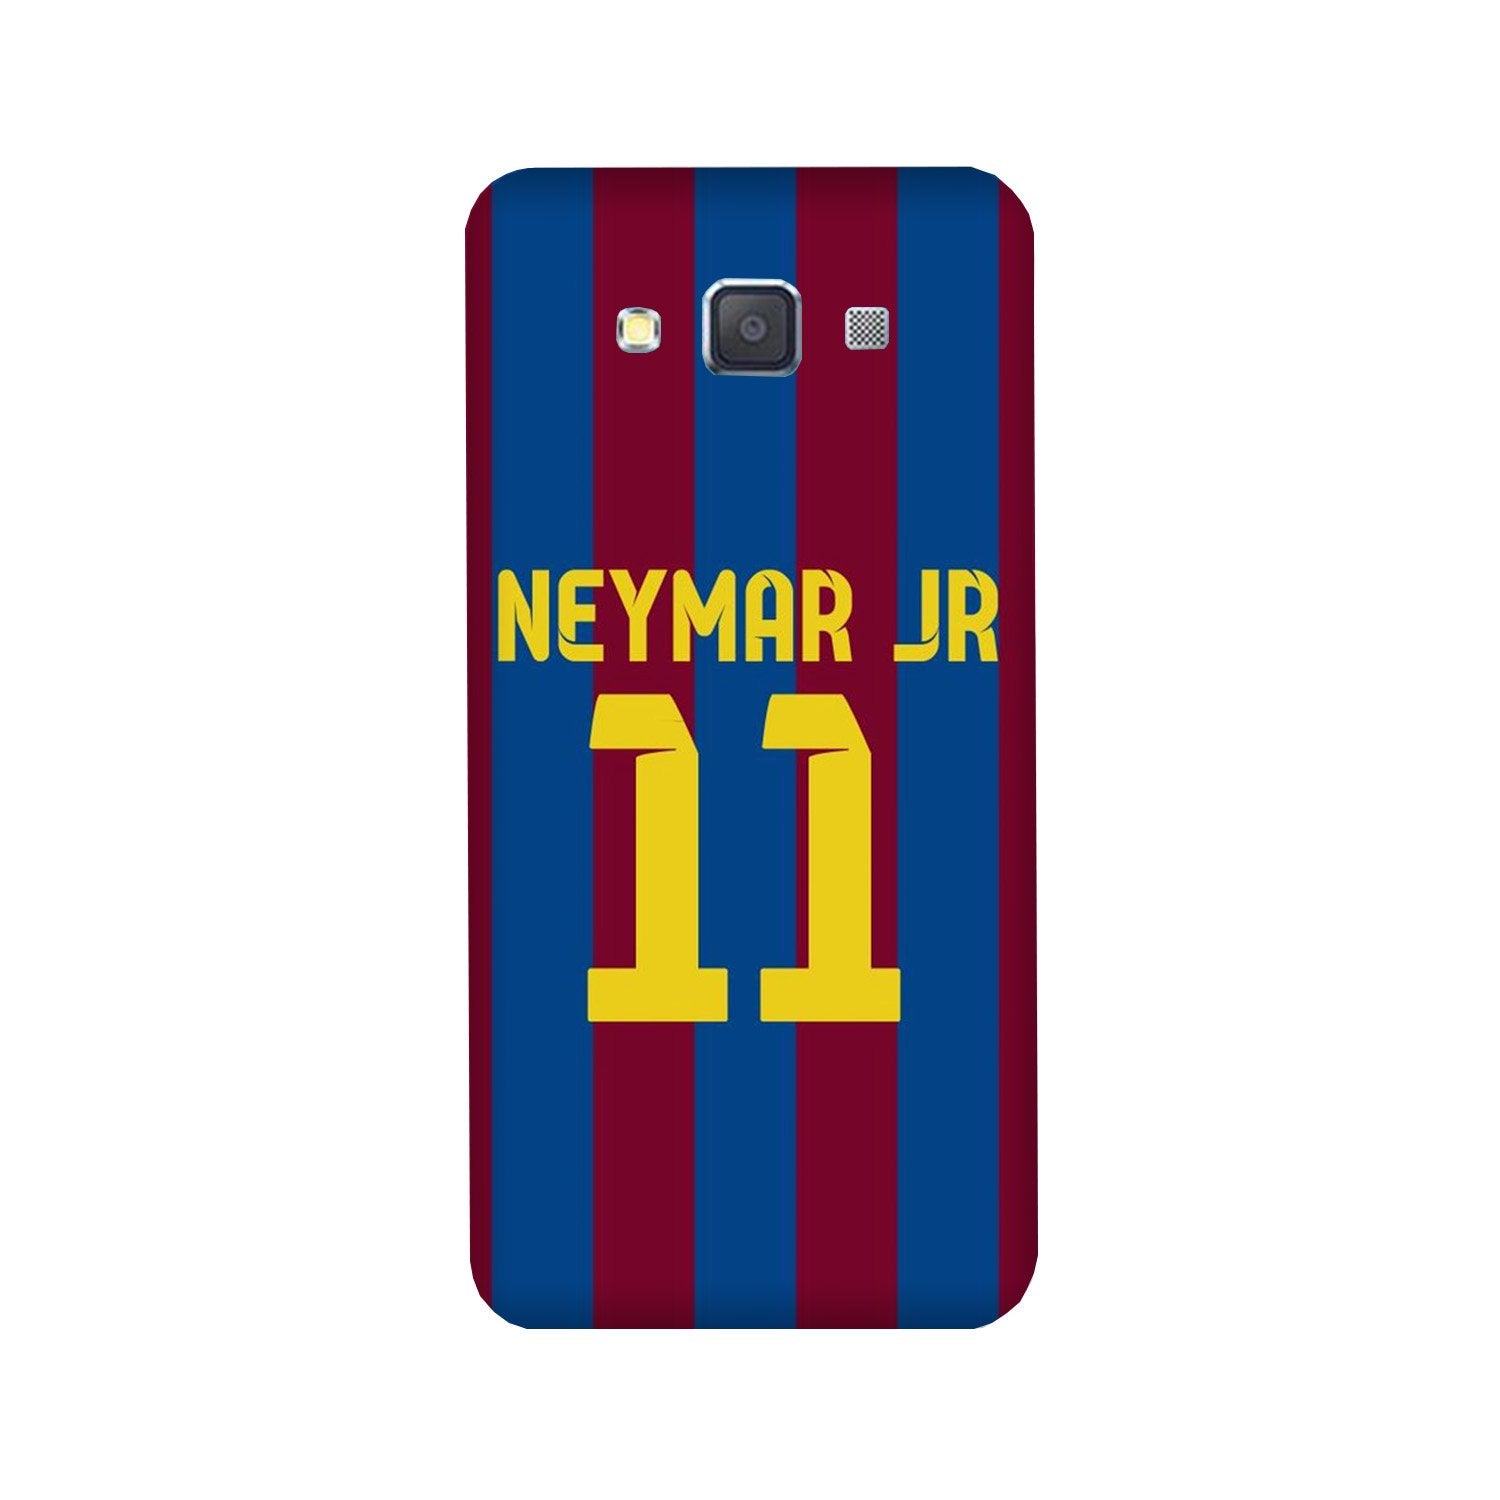 Neymar Jr Case for Galaxy A5 (2015)(Design - 162)